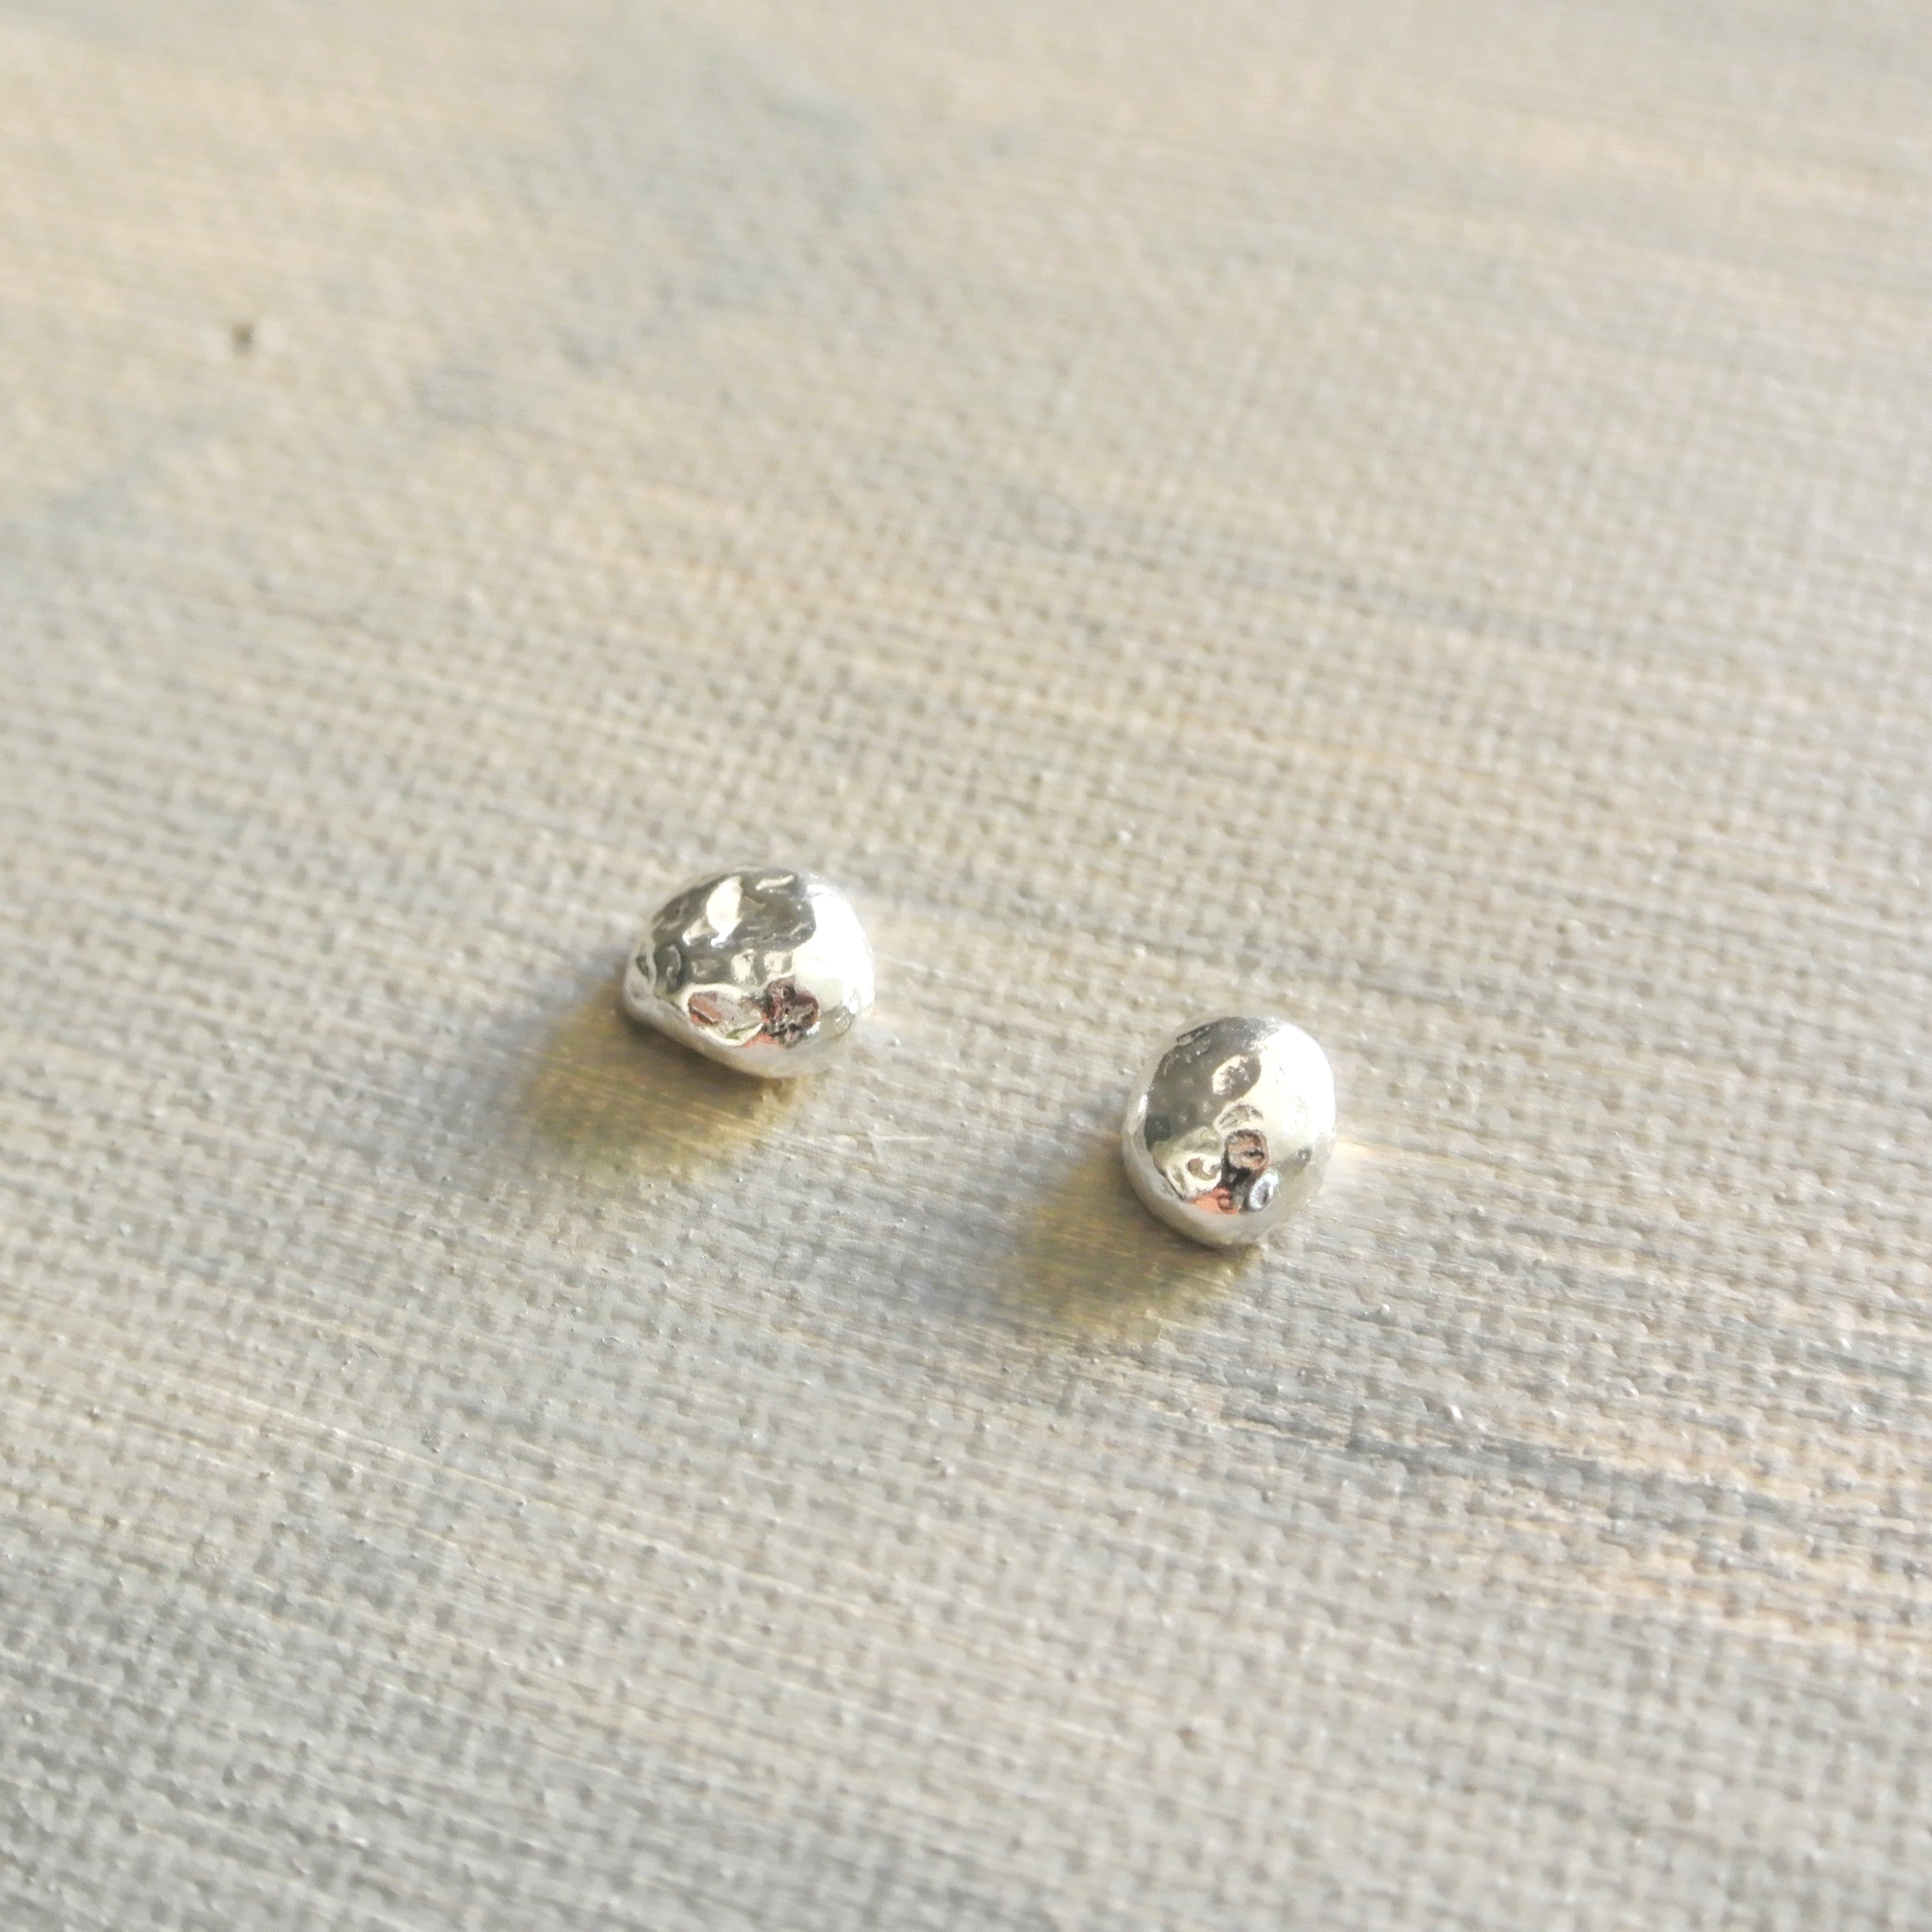 Pebble Shaped Sterling Silver Stud Earrings - 7 mm wide